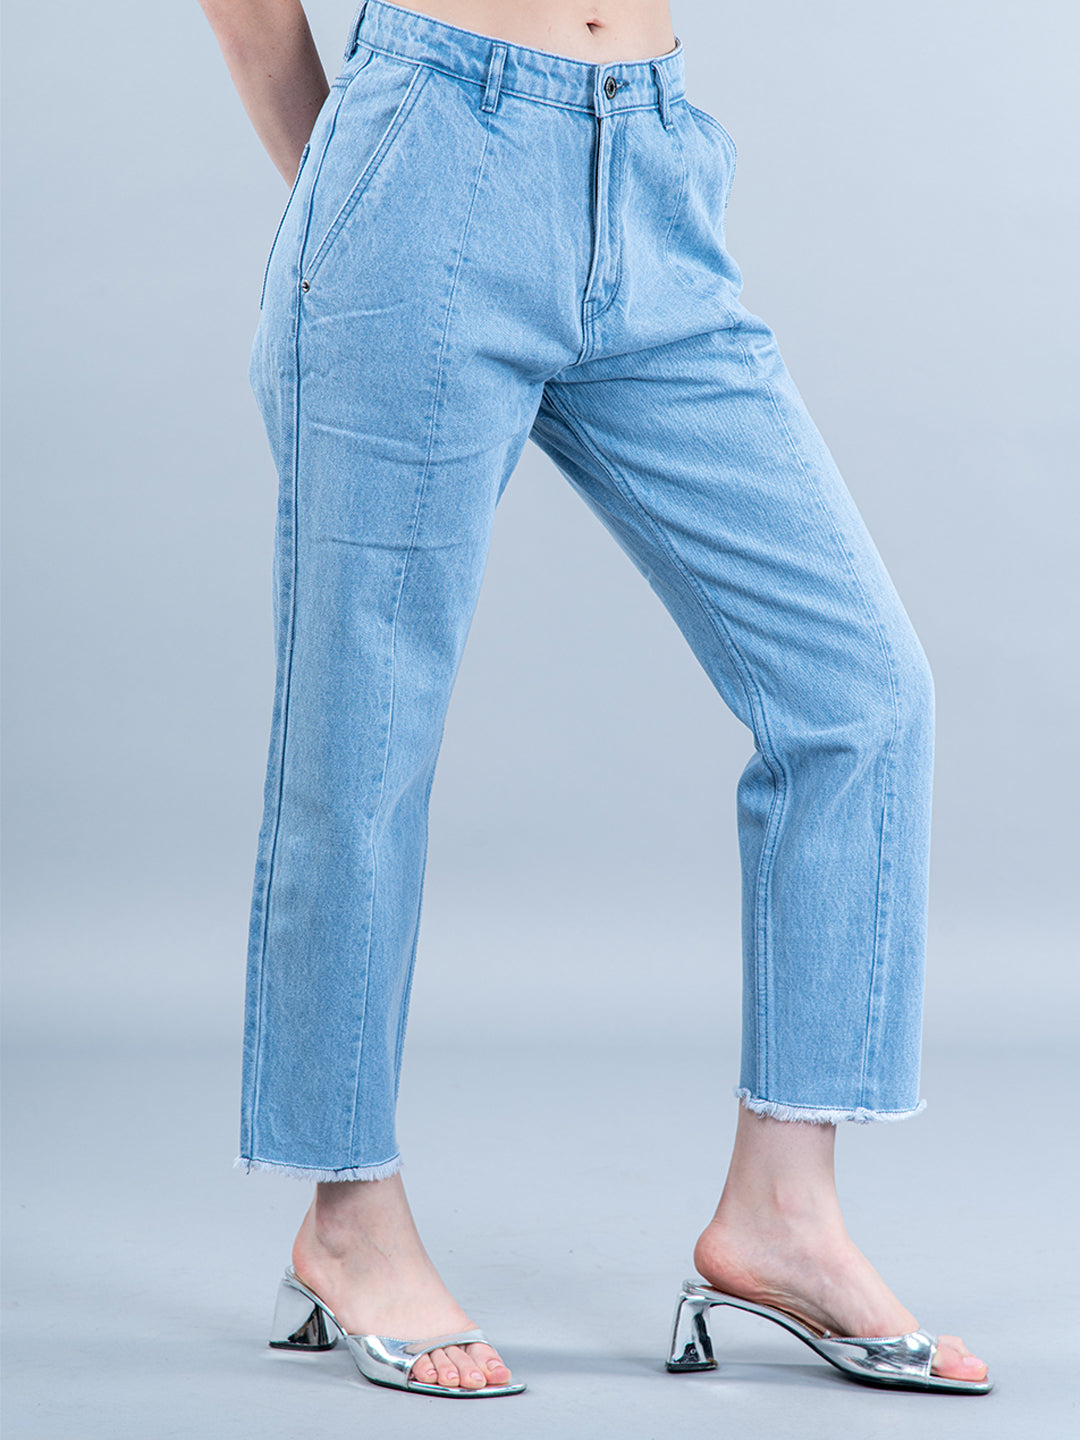 Buy Washed Denim Men's Jeans Online | Tistabene - Tistabene